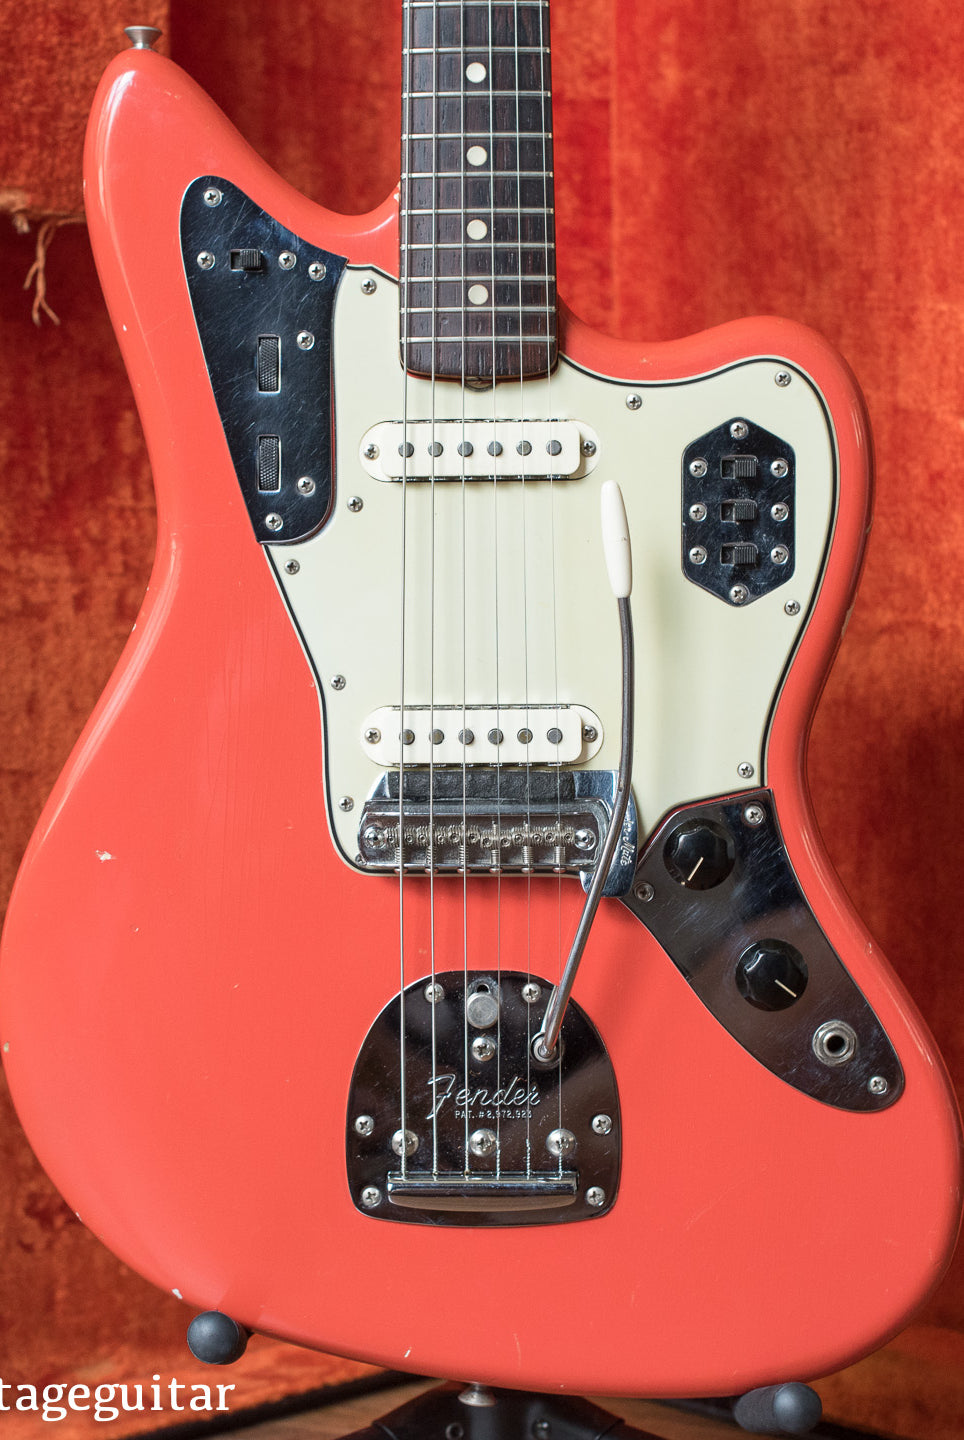 1965 Fender Jaguar Fiesta Red electric guitar